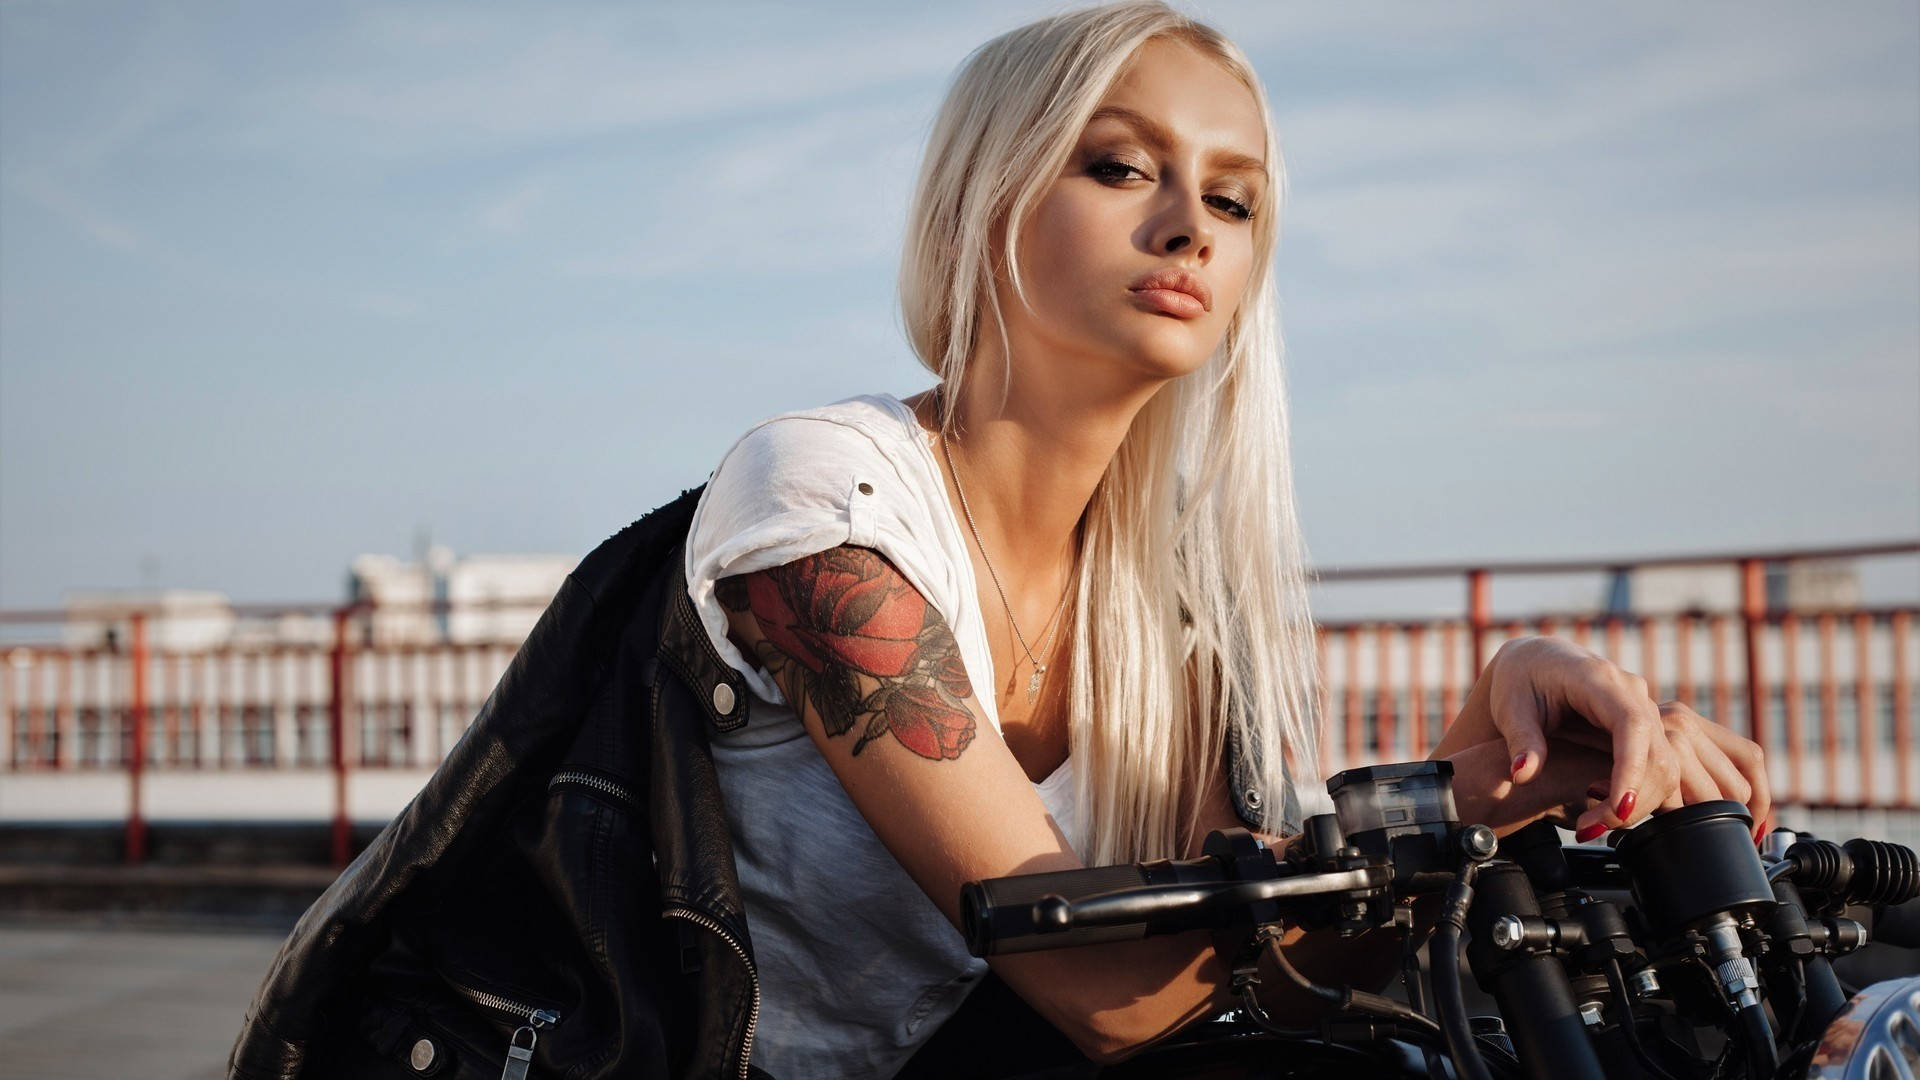 Bad Motorcycle Girl